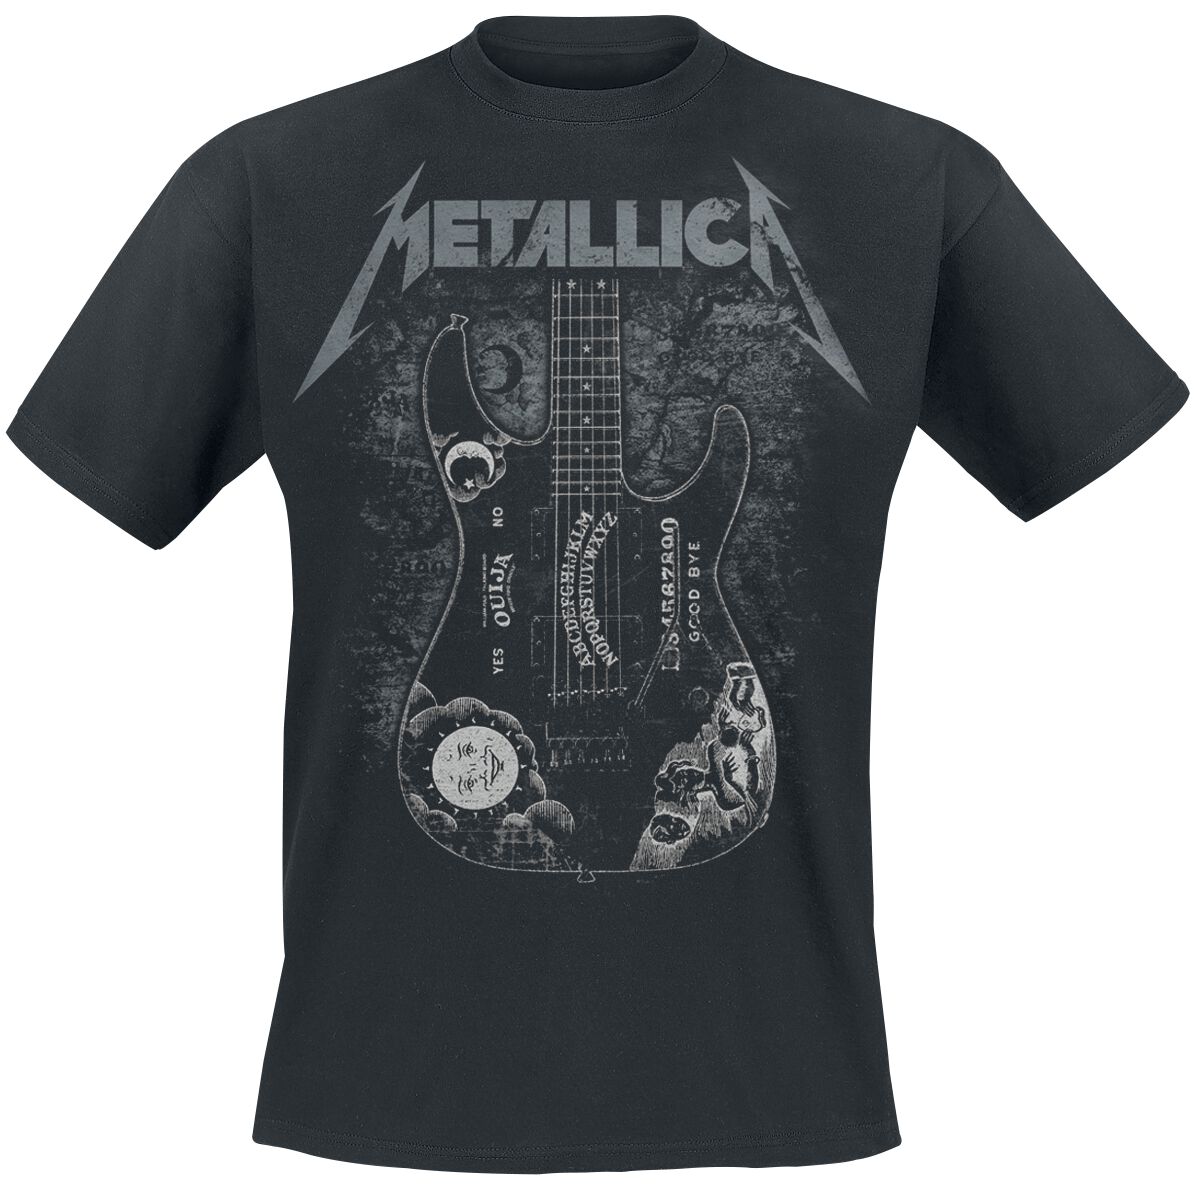 Metallica T-Shirt - Hammett Ouija Guitar - S bis 3XL - für Männer - Größe M - schwarz  - Lizenziertes Merchandise!